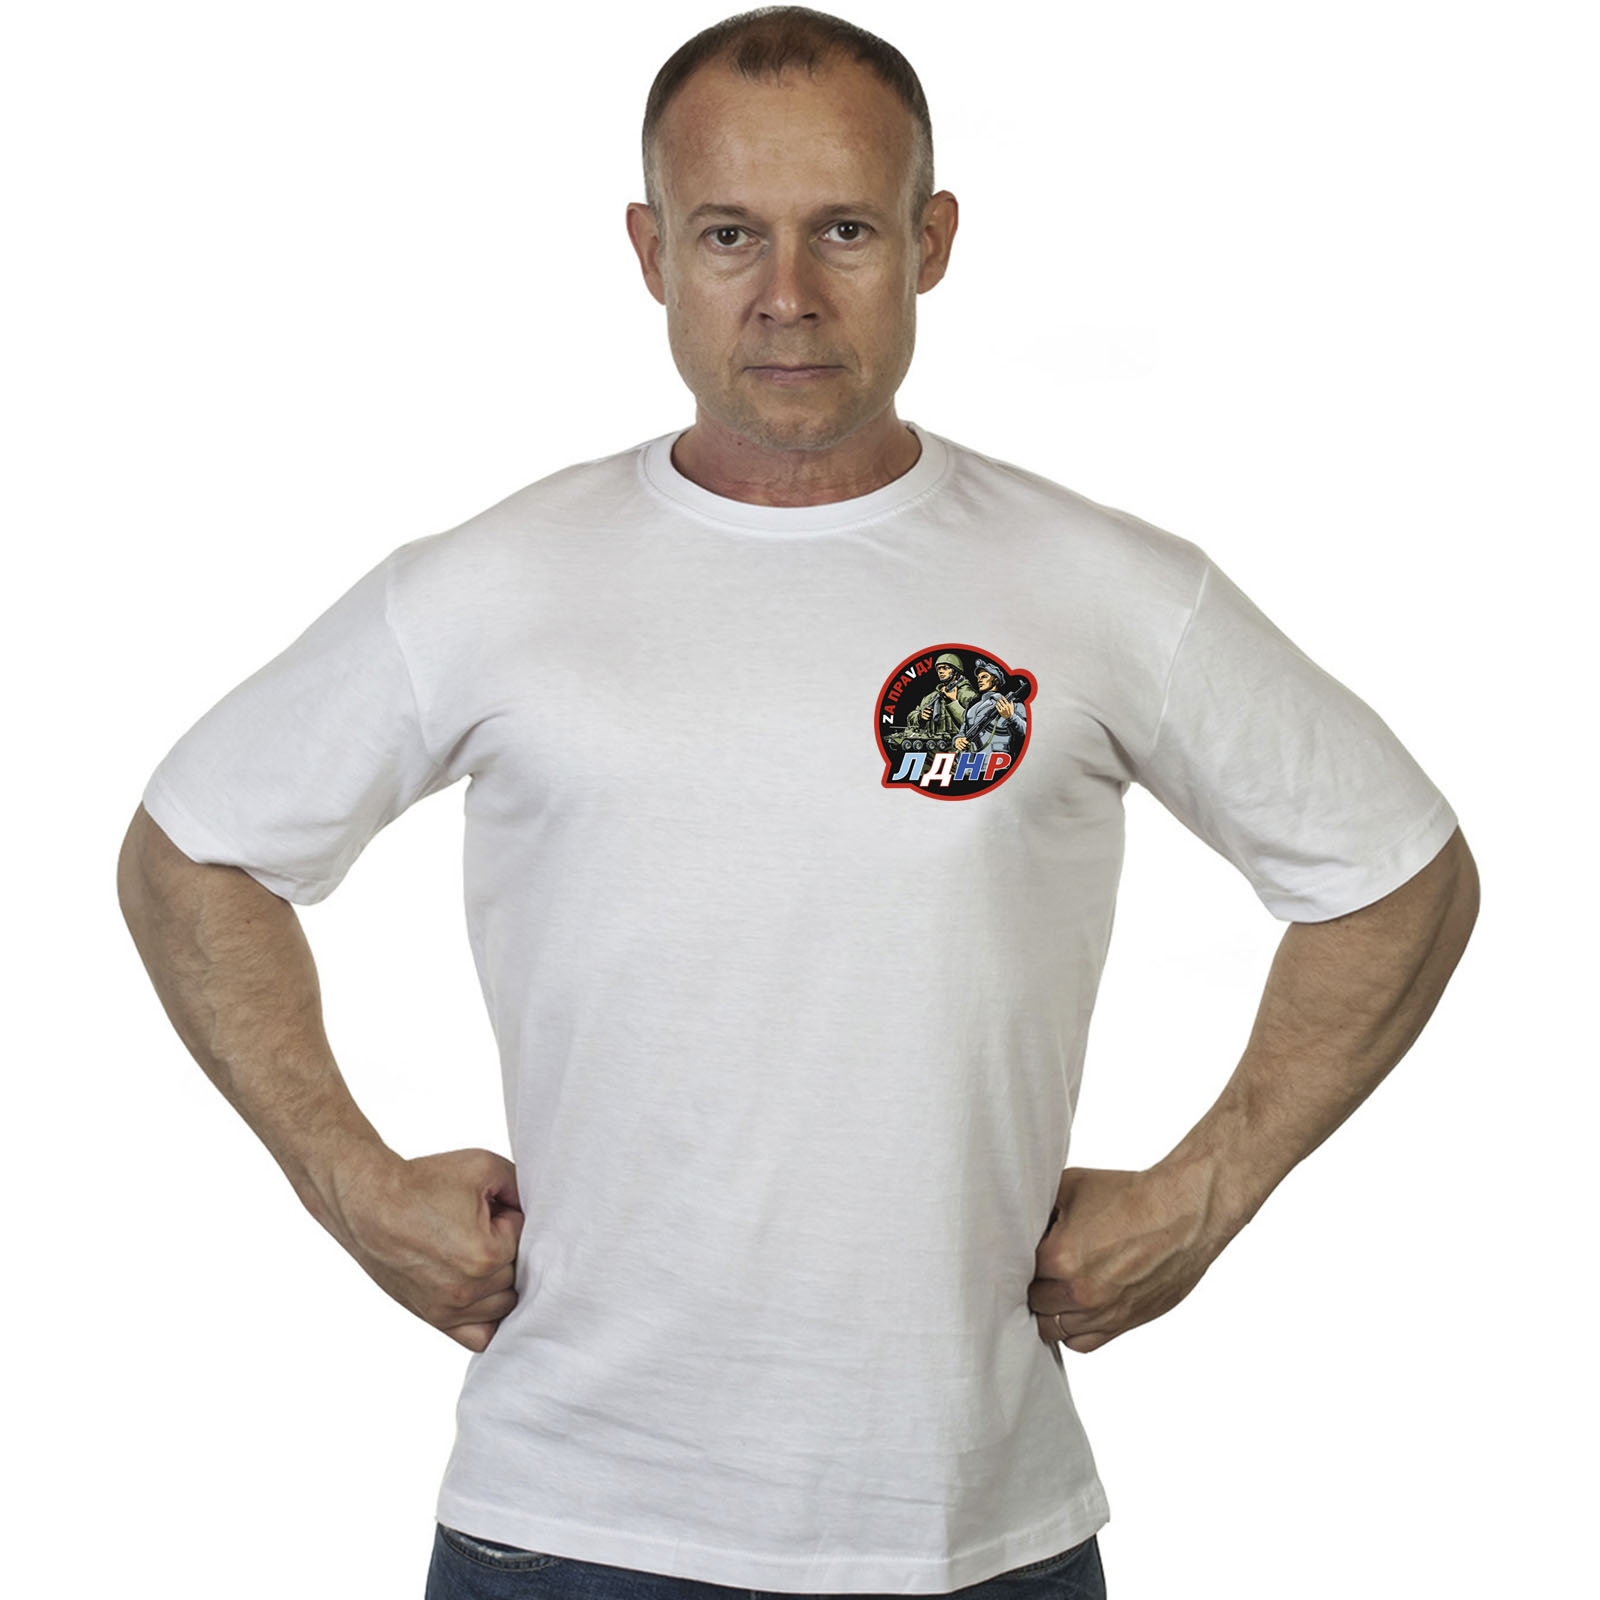 Белая футболка с термотрансфером ЛДНР "Zа праVду"